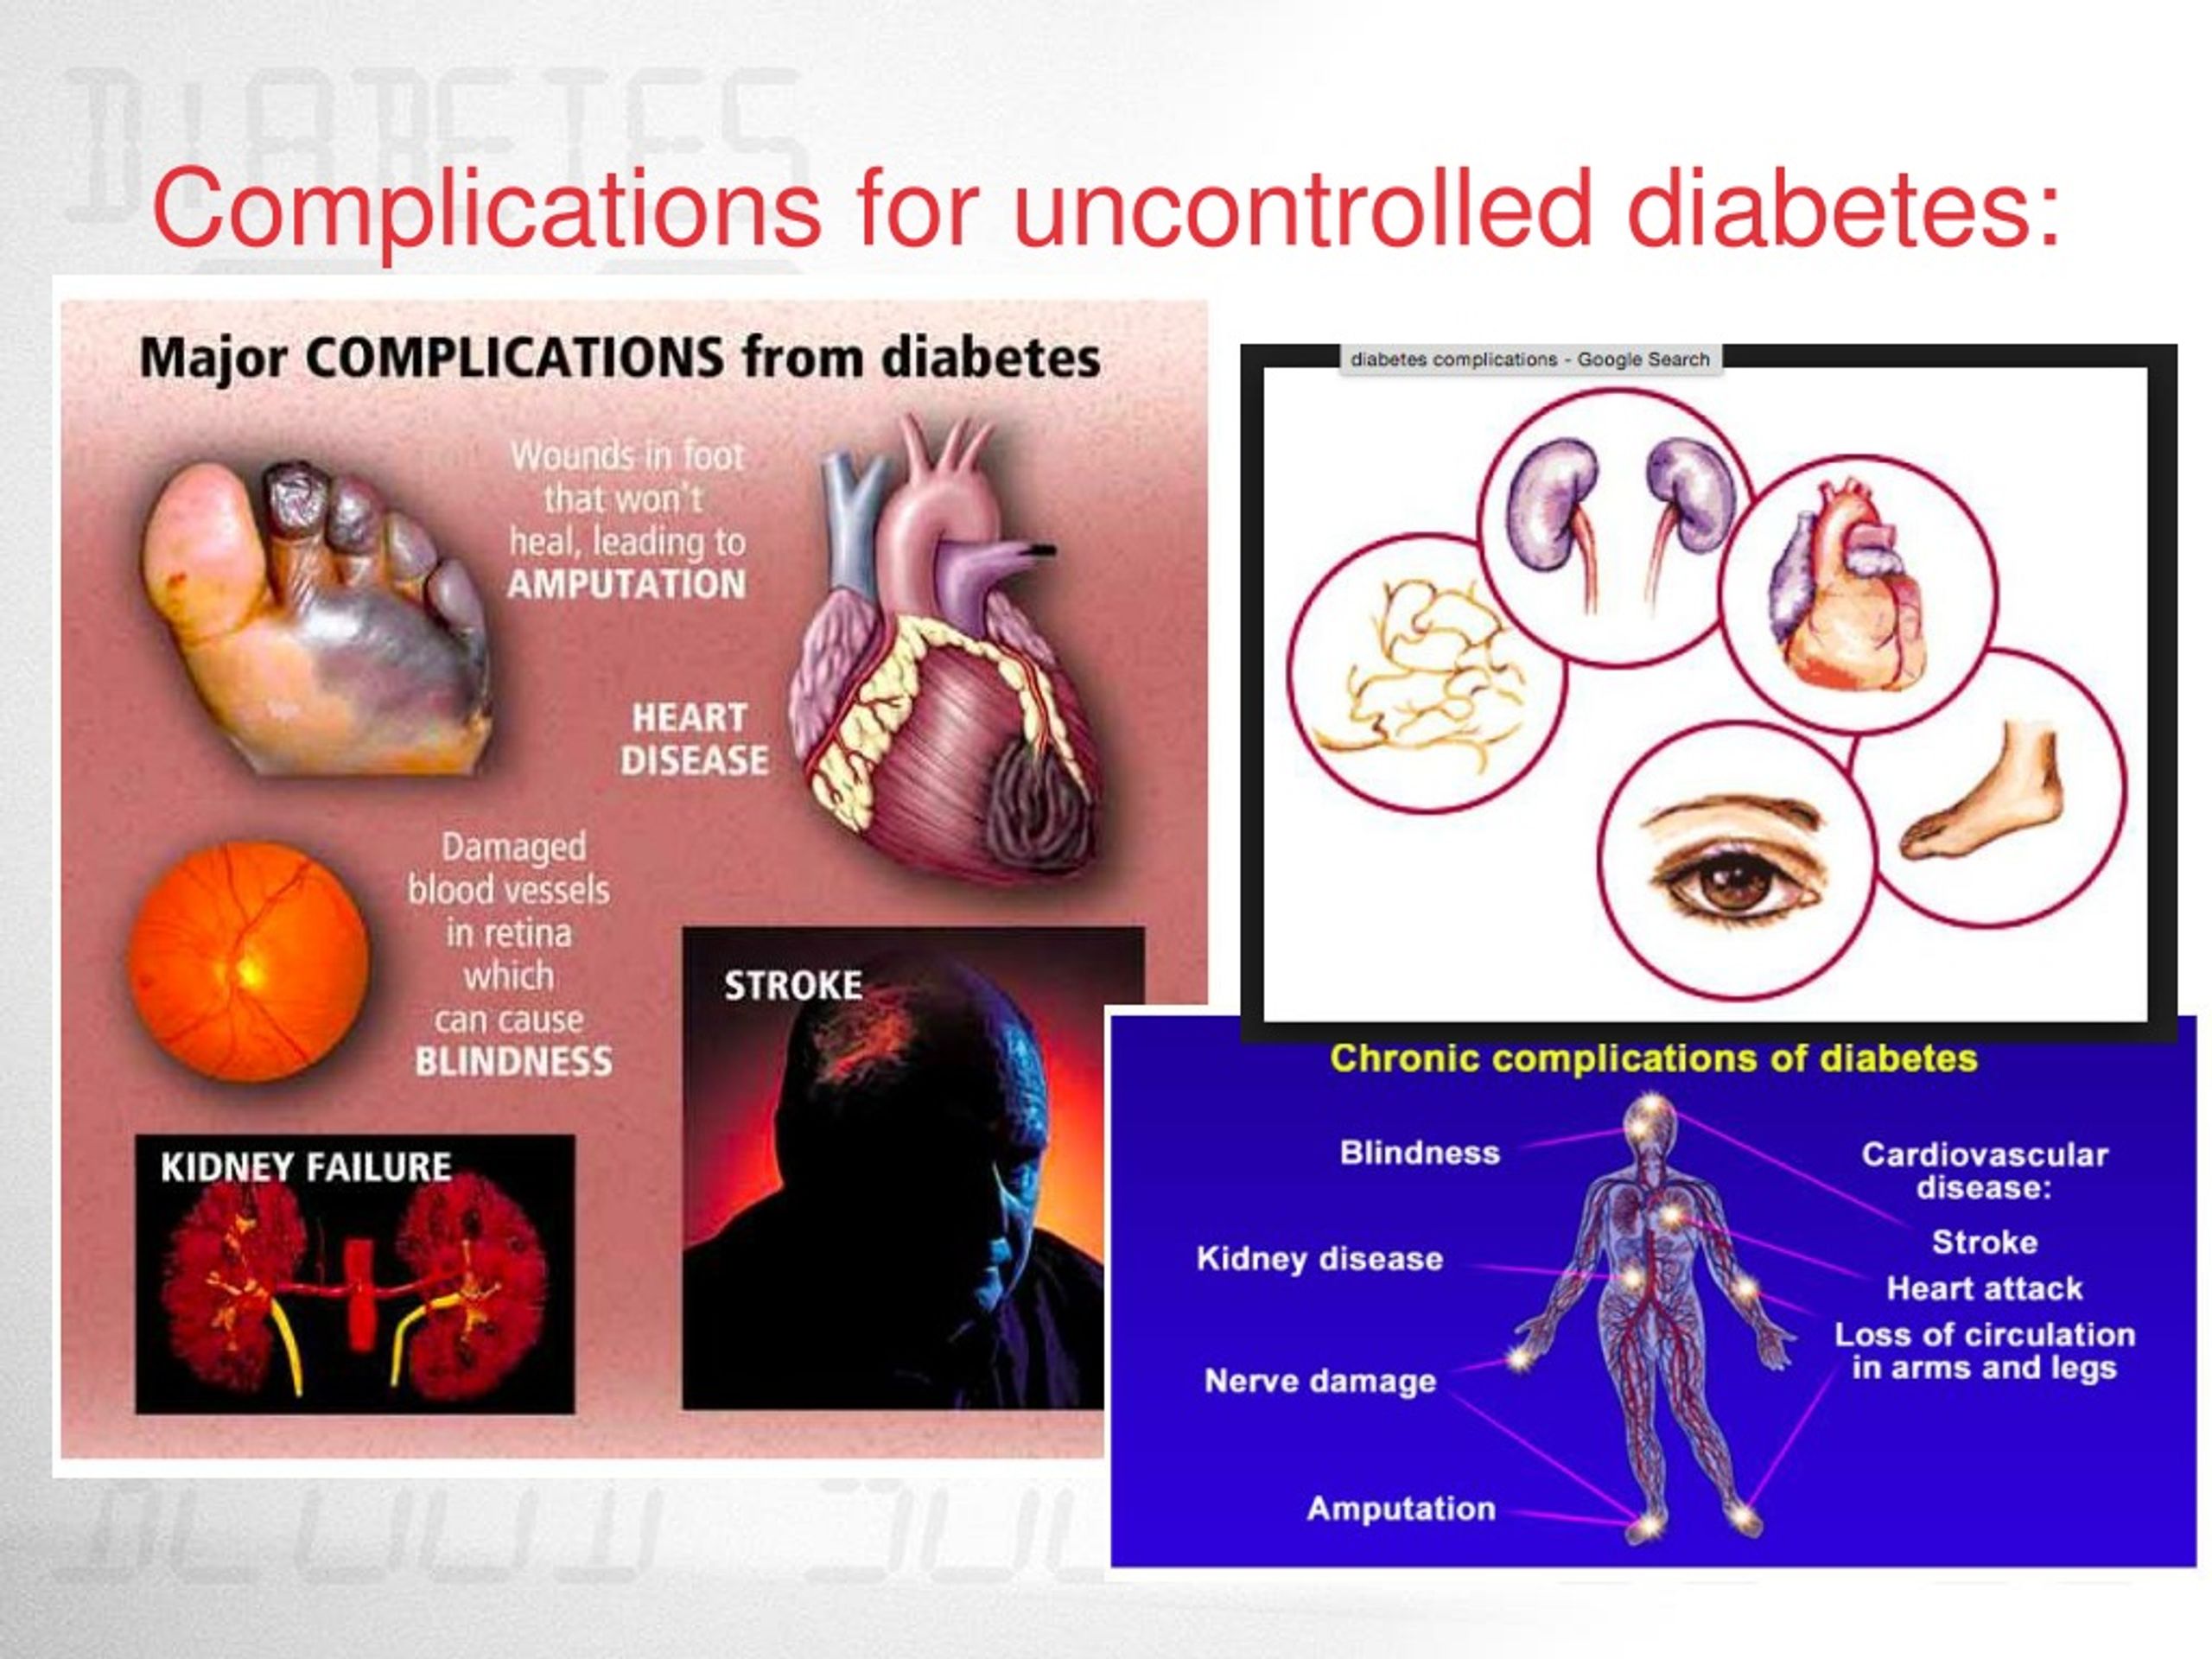 atypical presentation of mi in diabetes